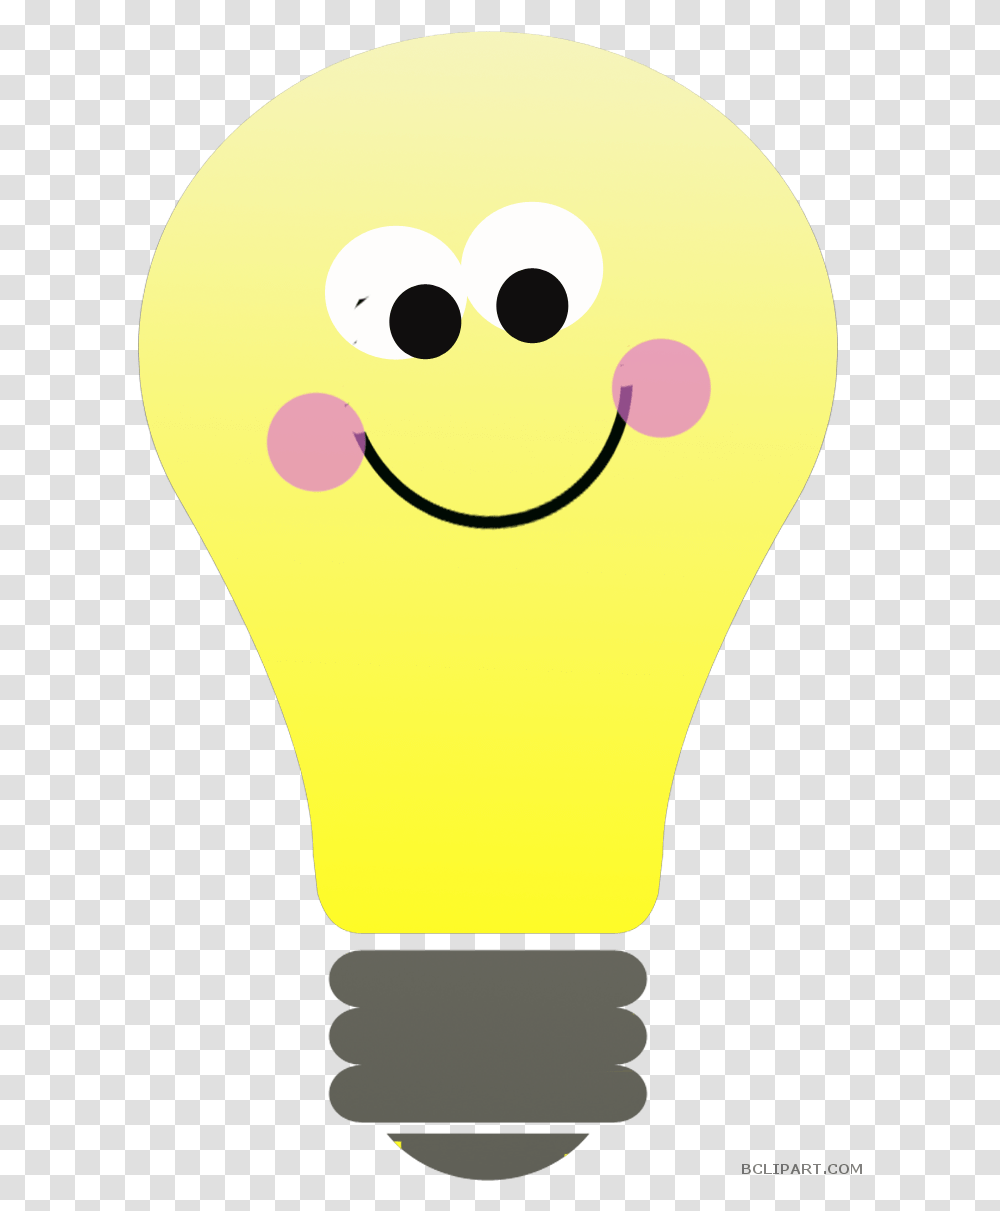 Thinking Light Bulb Clipart Bulb For Kids, Lightbulb, Giant Panda, Bear, Wildlife Transparent Png